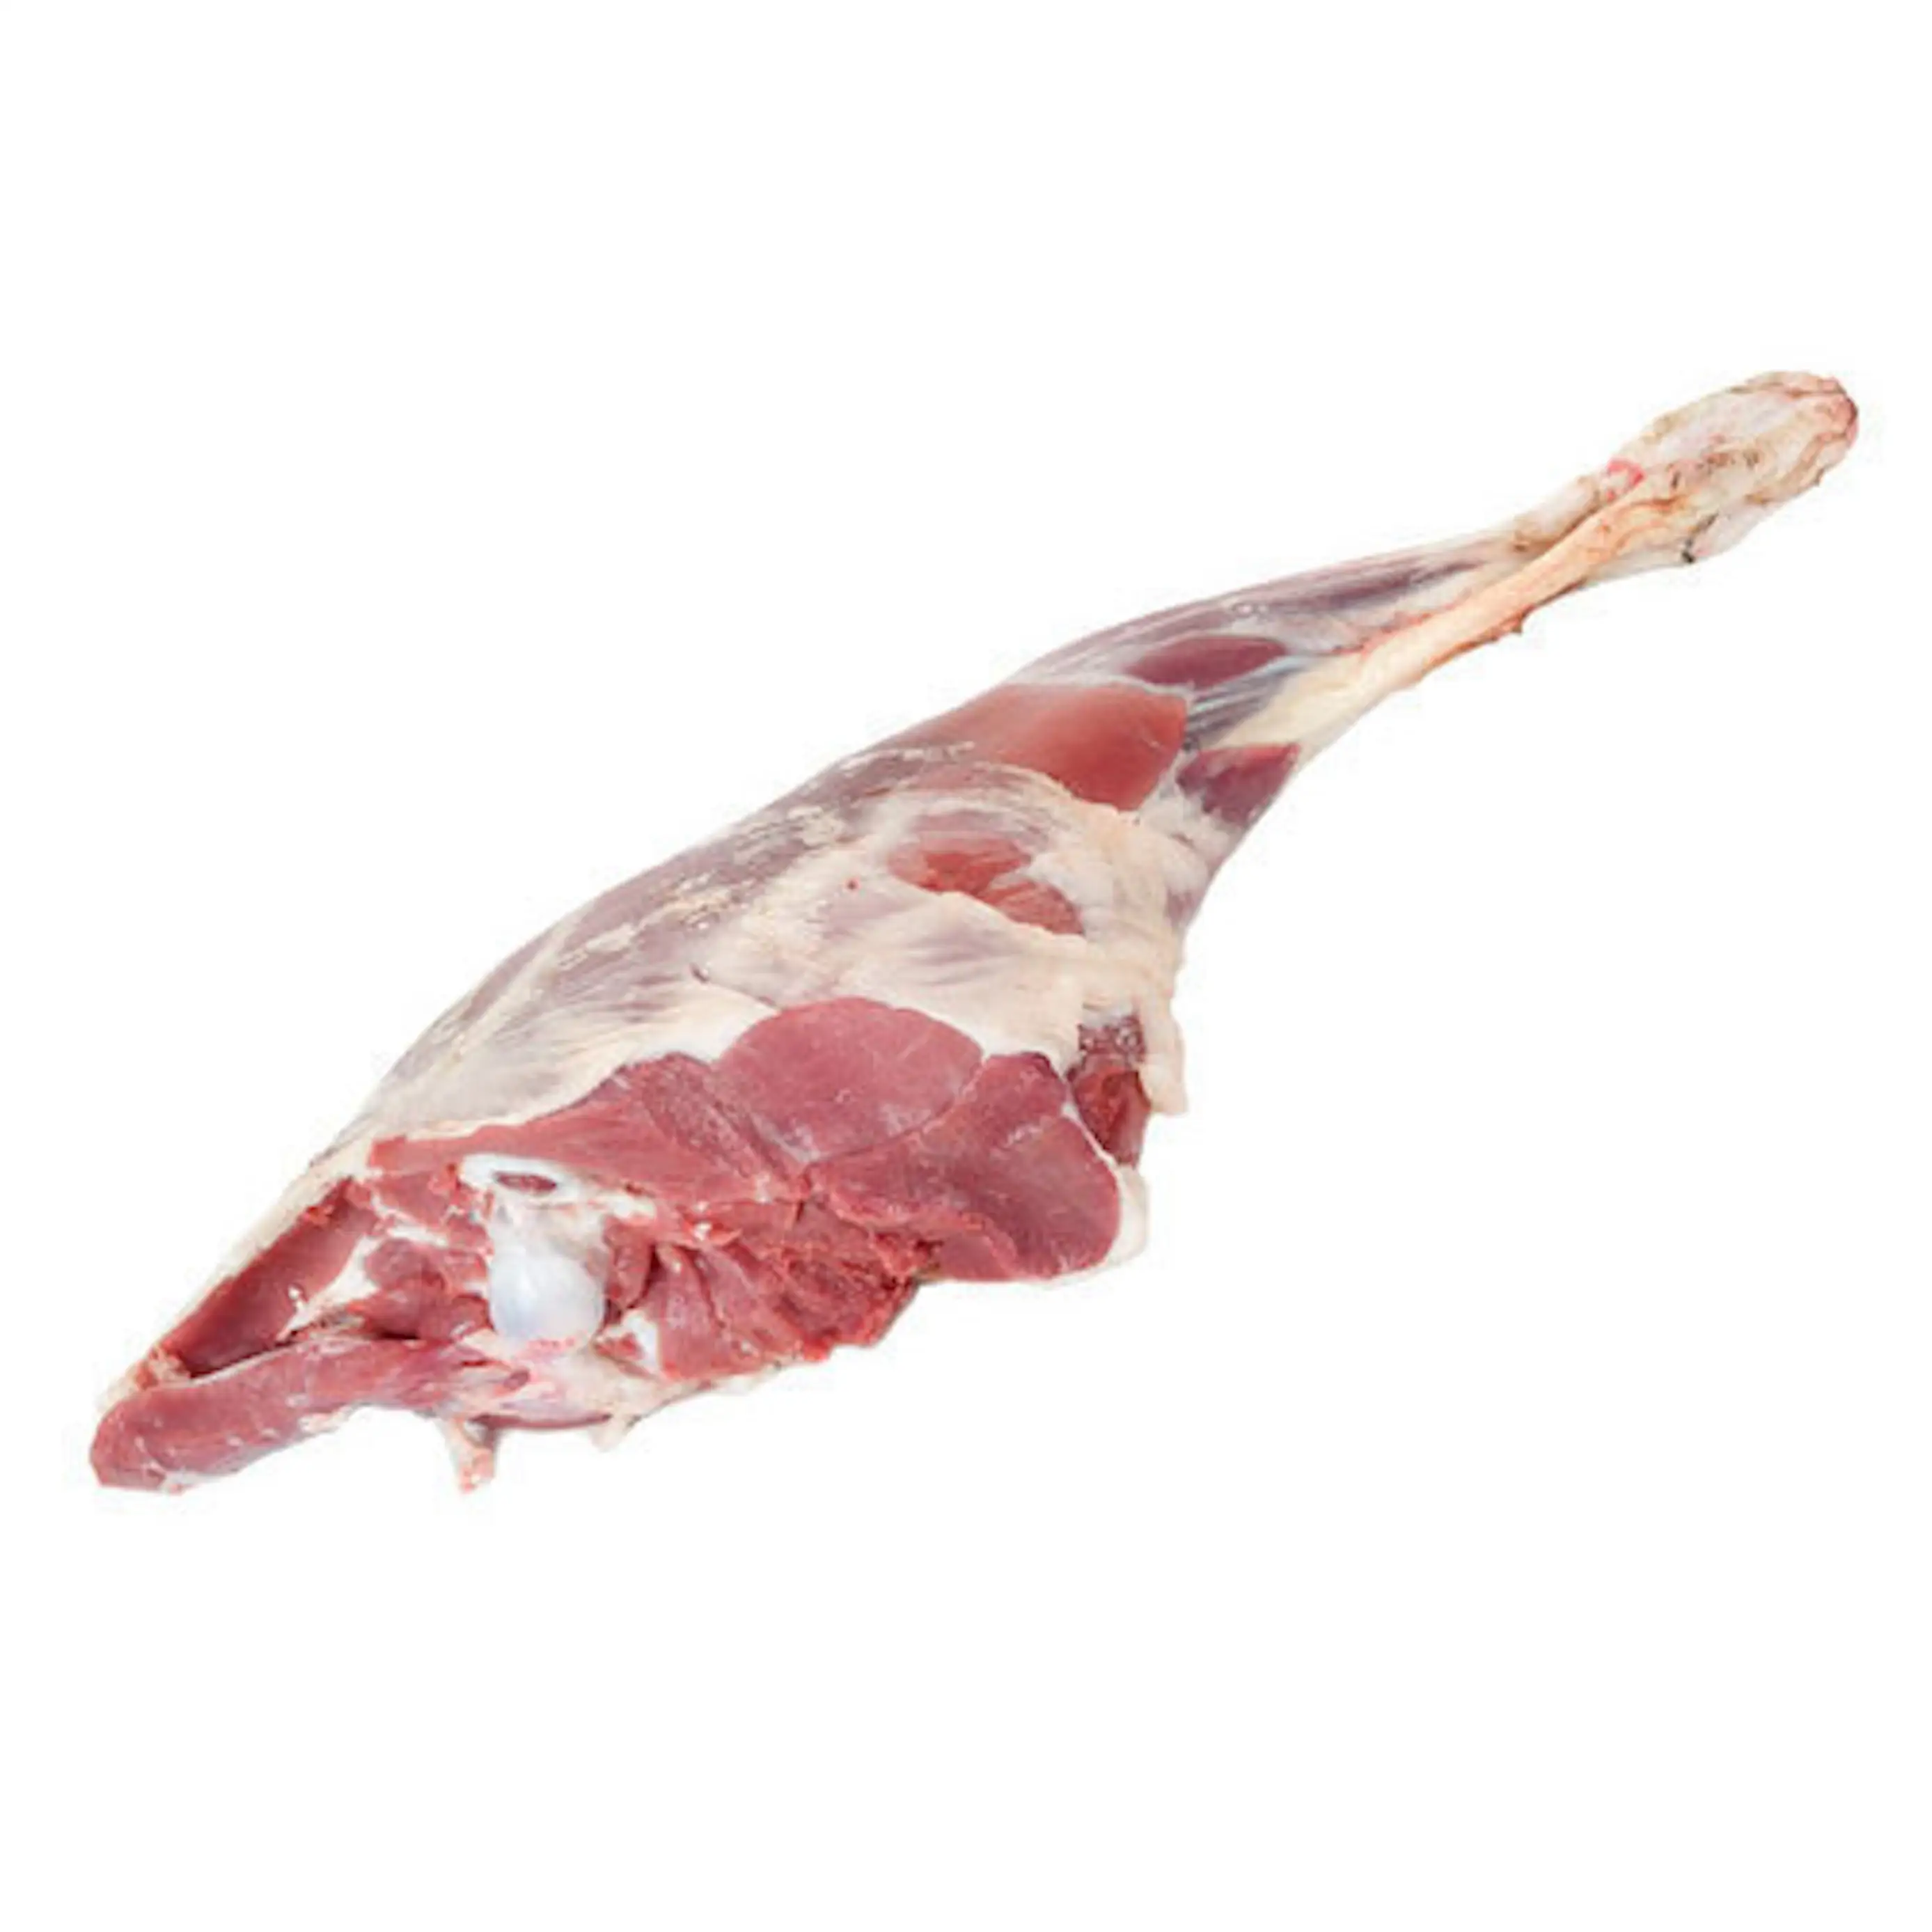 Hochwertiges gefrorenes Halal-Ziegenfleisch / frisches Halal-Ziegenfleisch für Export